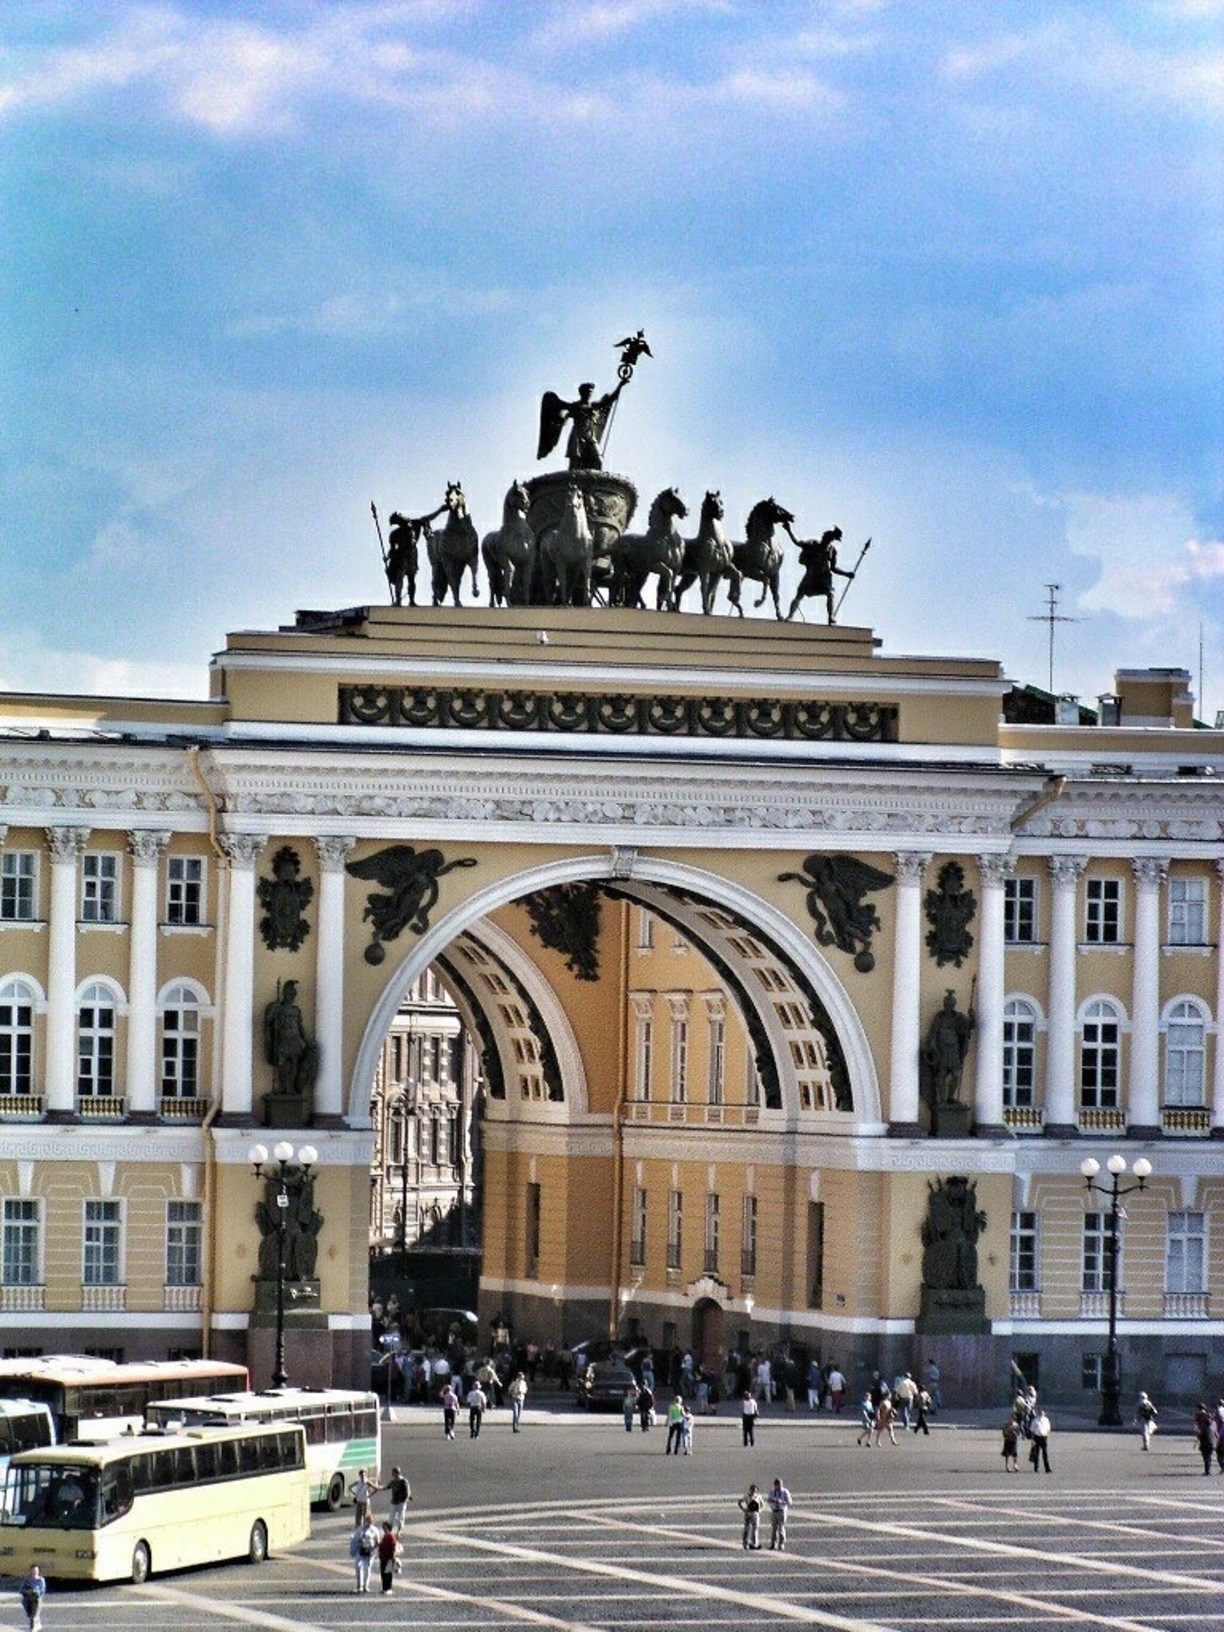 Достопримечательности петербурга картинки с названиями